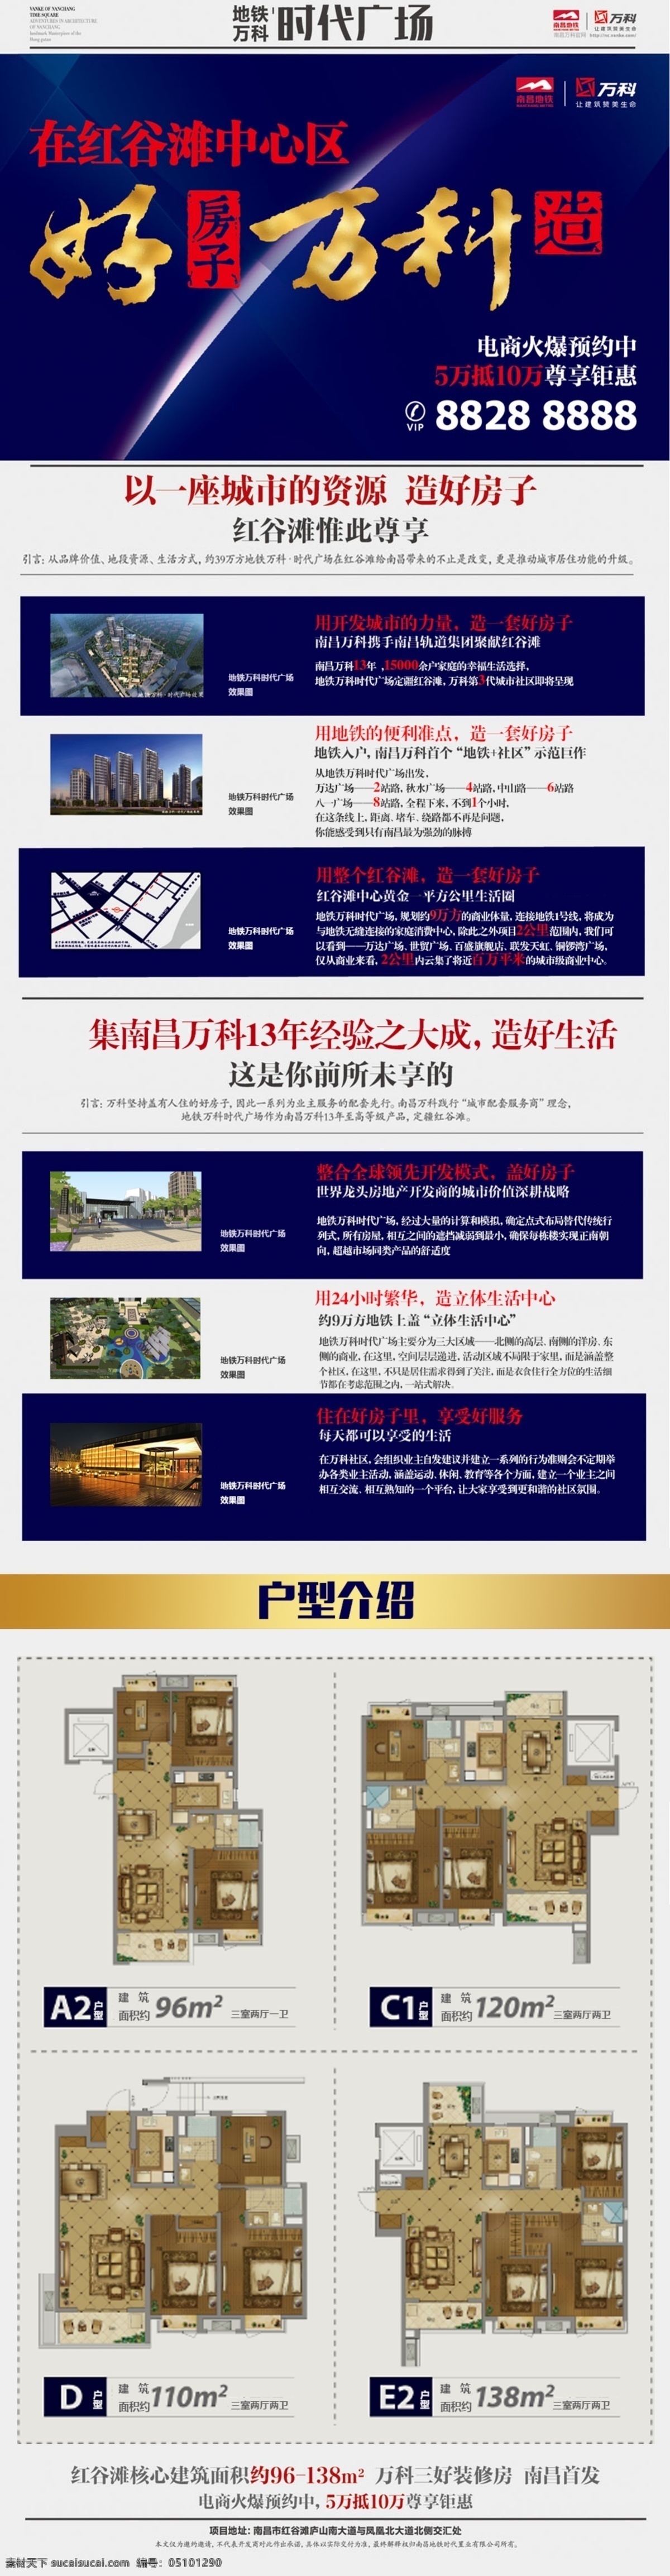 万科 时代广场 邮件 网页 精品 杂选 web 界面设计 中文模板